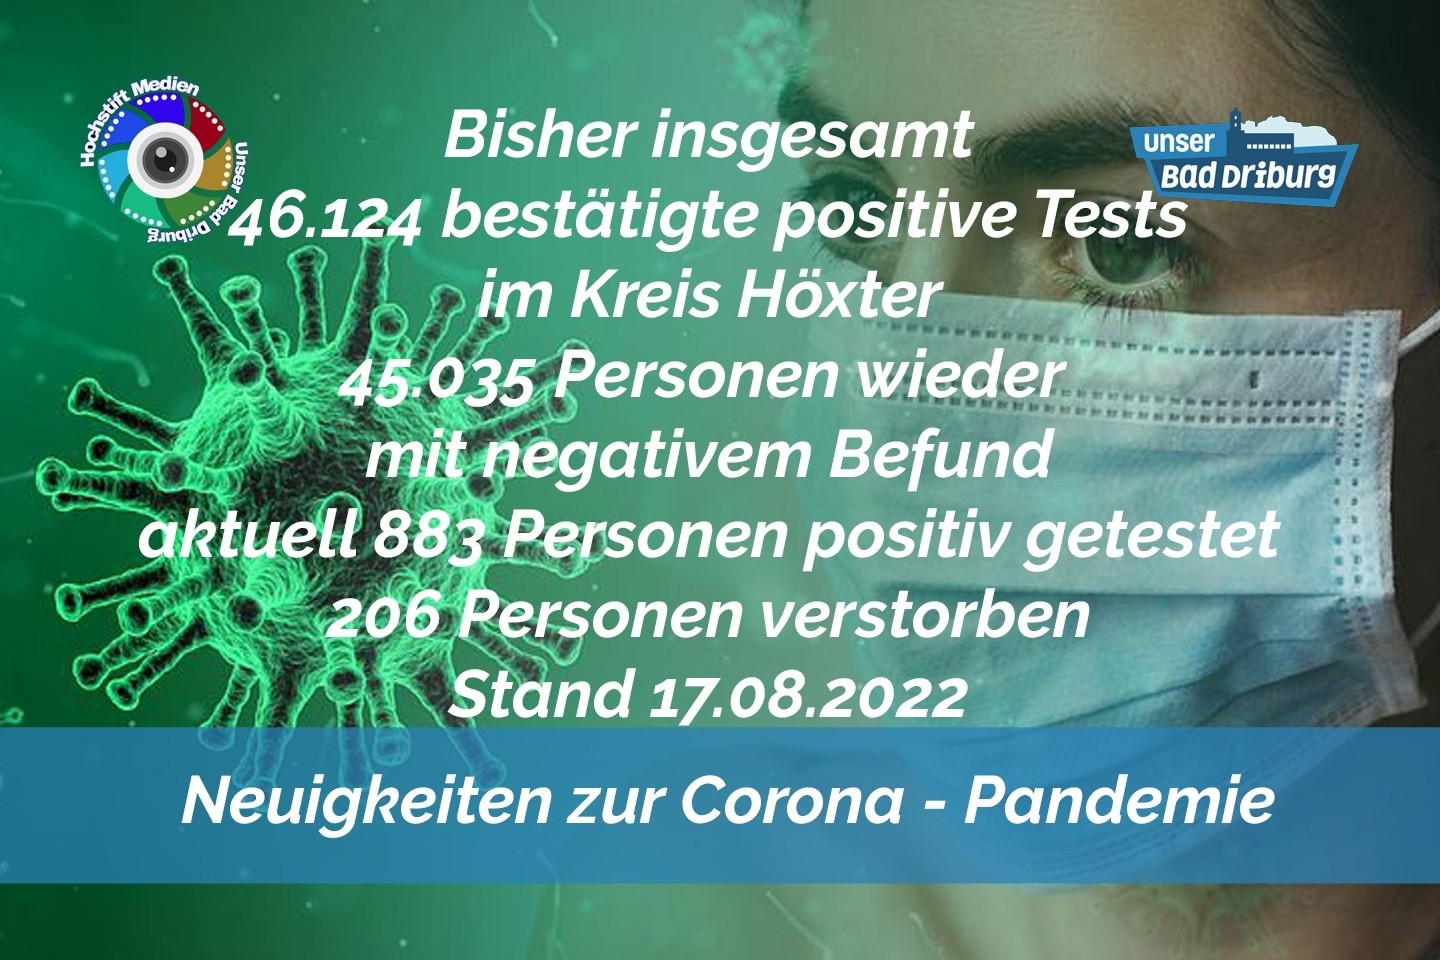 Update 17. August 2022: 207 weitere amtlich positive Tests im Kreis Höxter